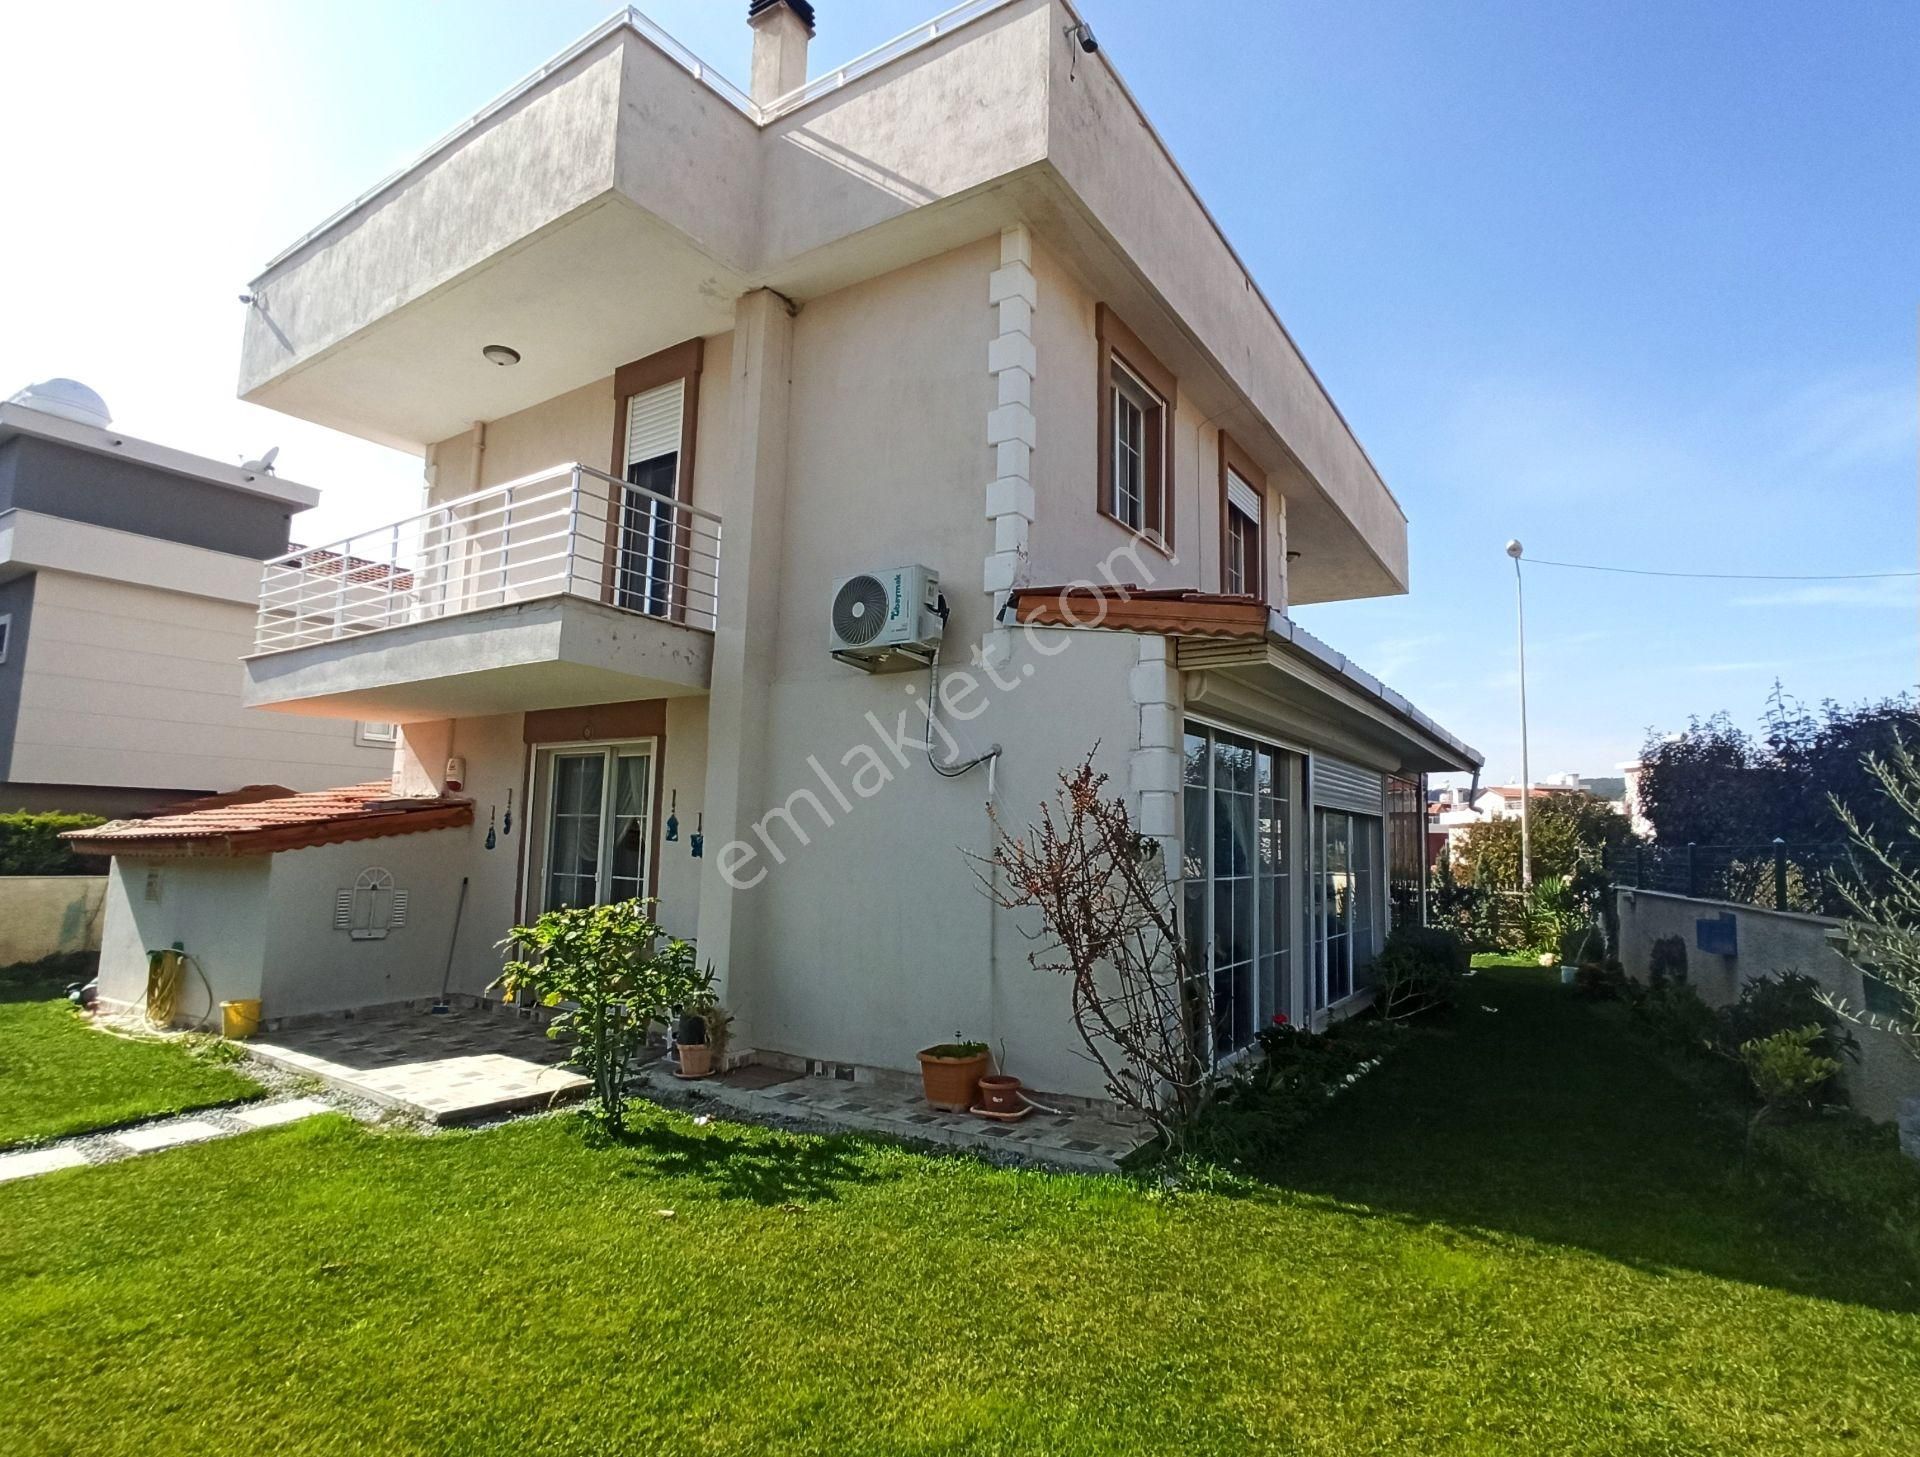 Urla Bademler Satılık Villa  URLA Bademler Köyü Doğa Evleri Sitesi Satılık Lüks Tam Müstakil Villa